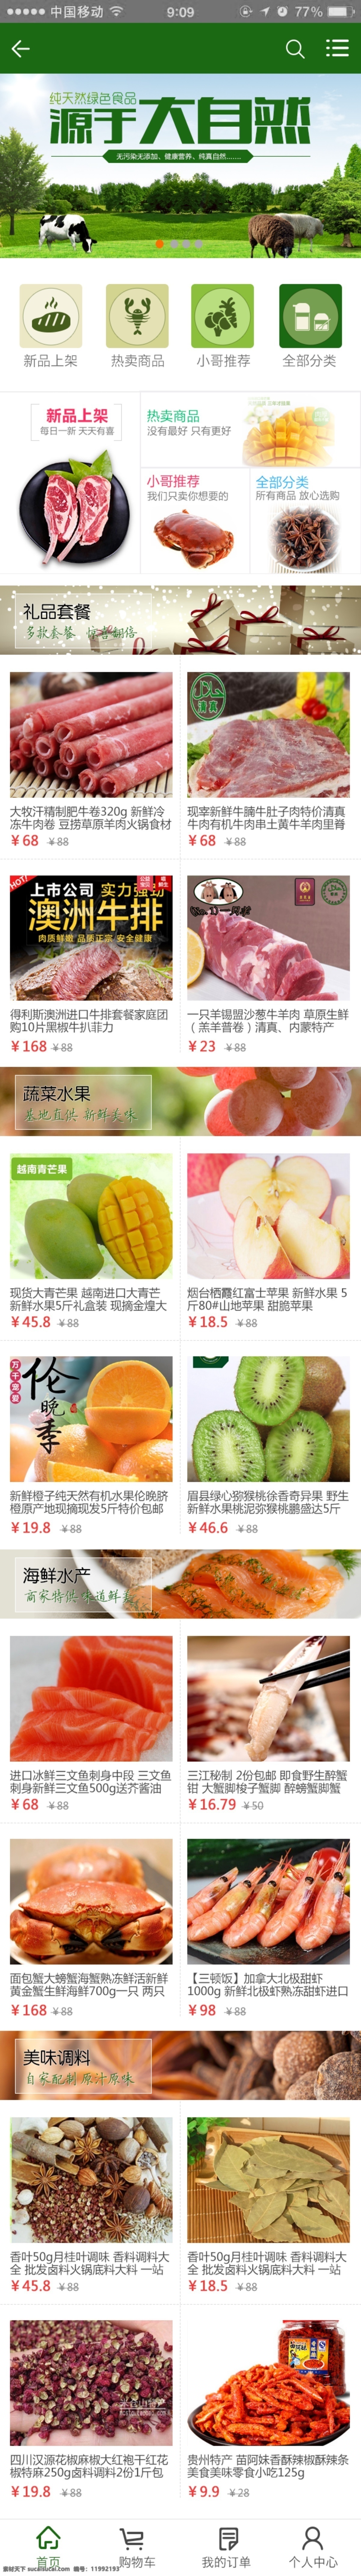 电商 食品 商城 类 手机 页面 天猫 淘宝 牛肉 水果 蔬菜 首页 app 分类 新品上架